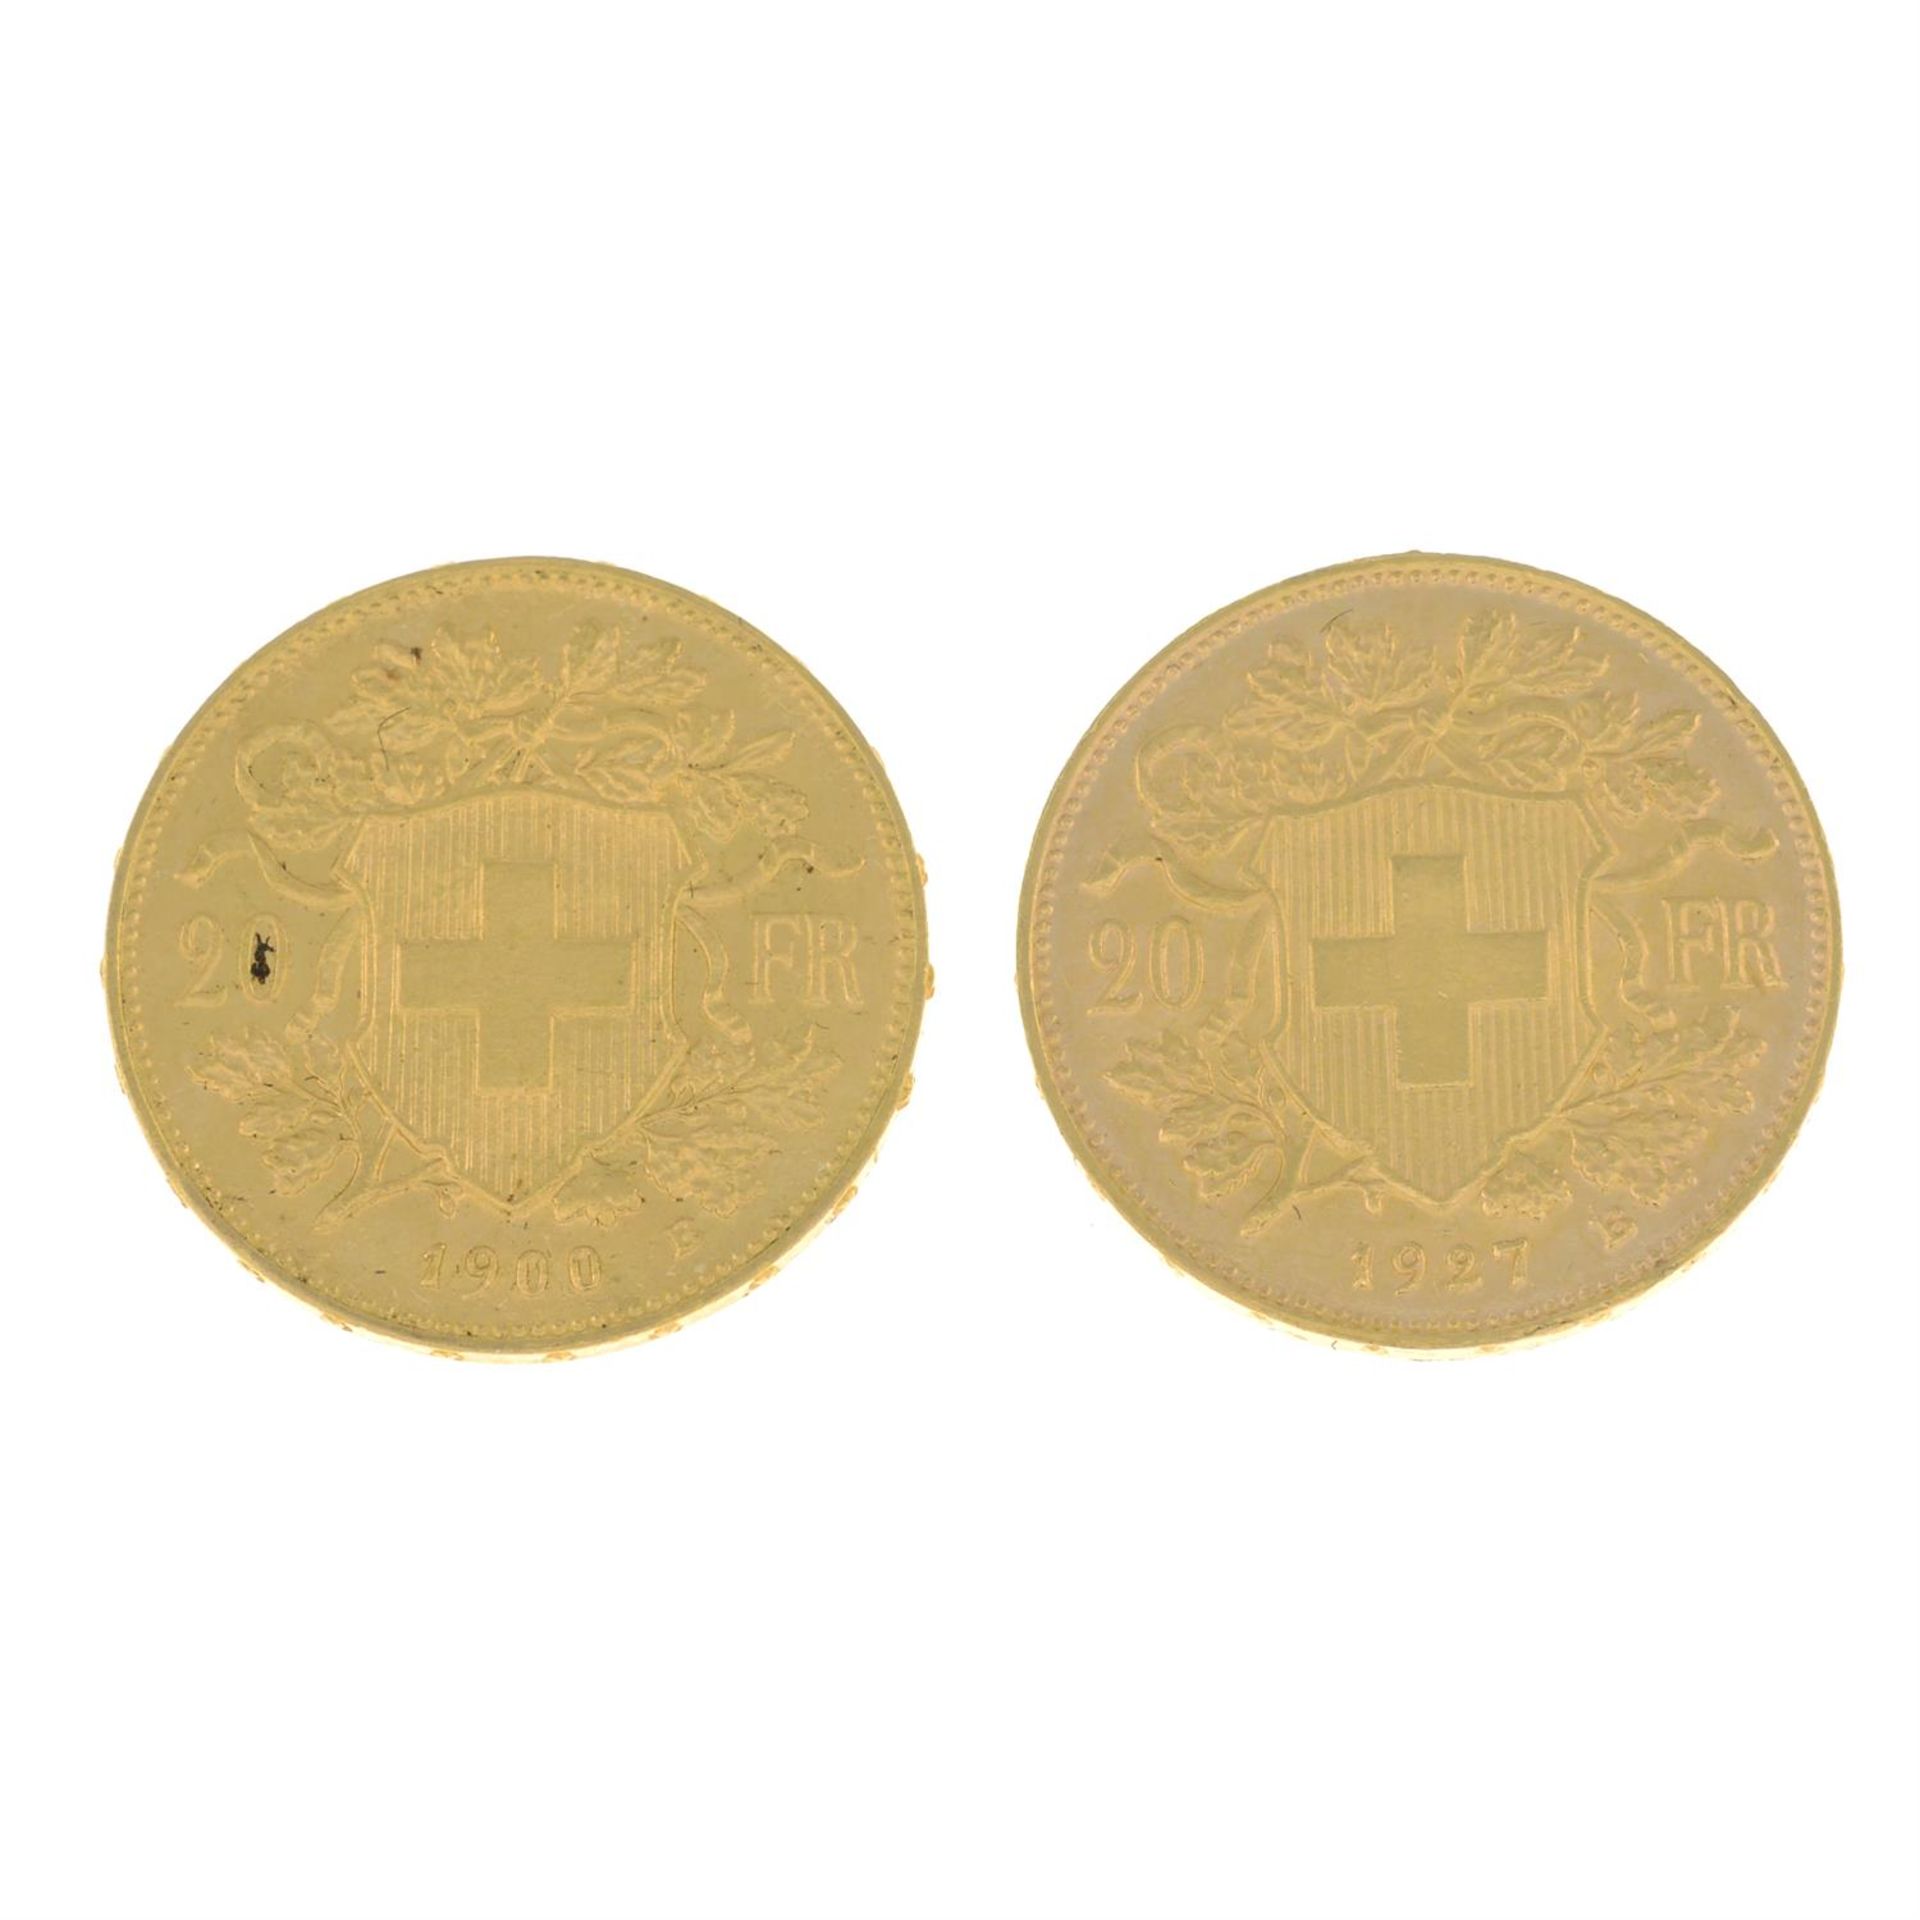 Switzerland, gold 20-Francs (2). - Image 2 of 2